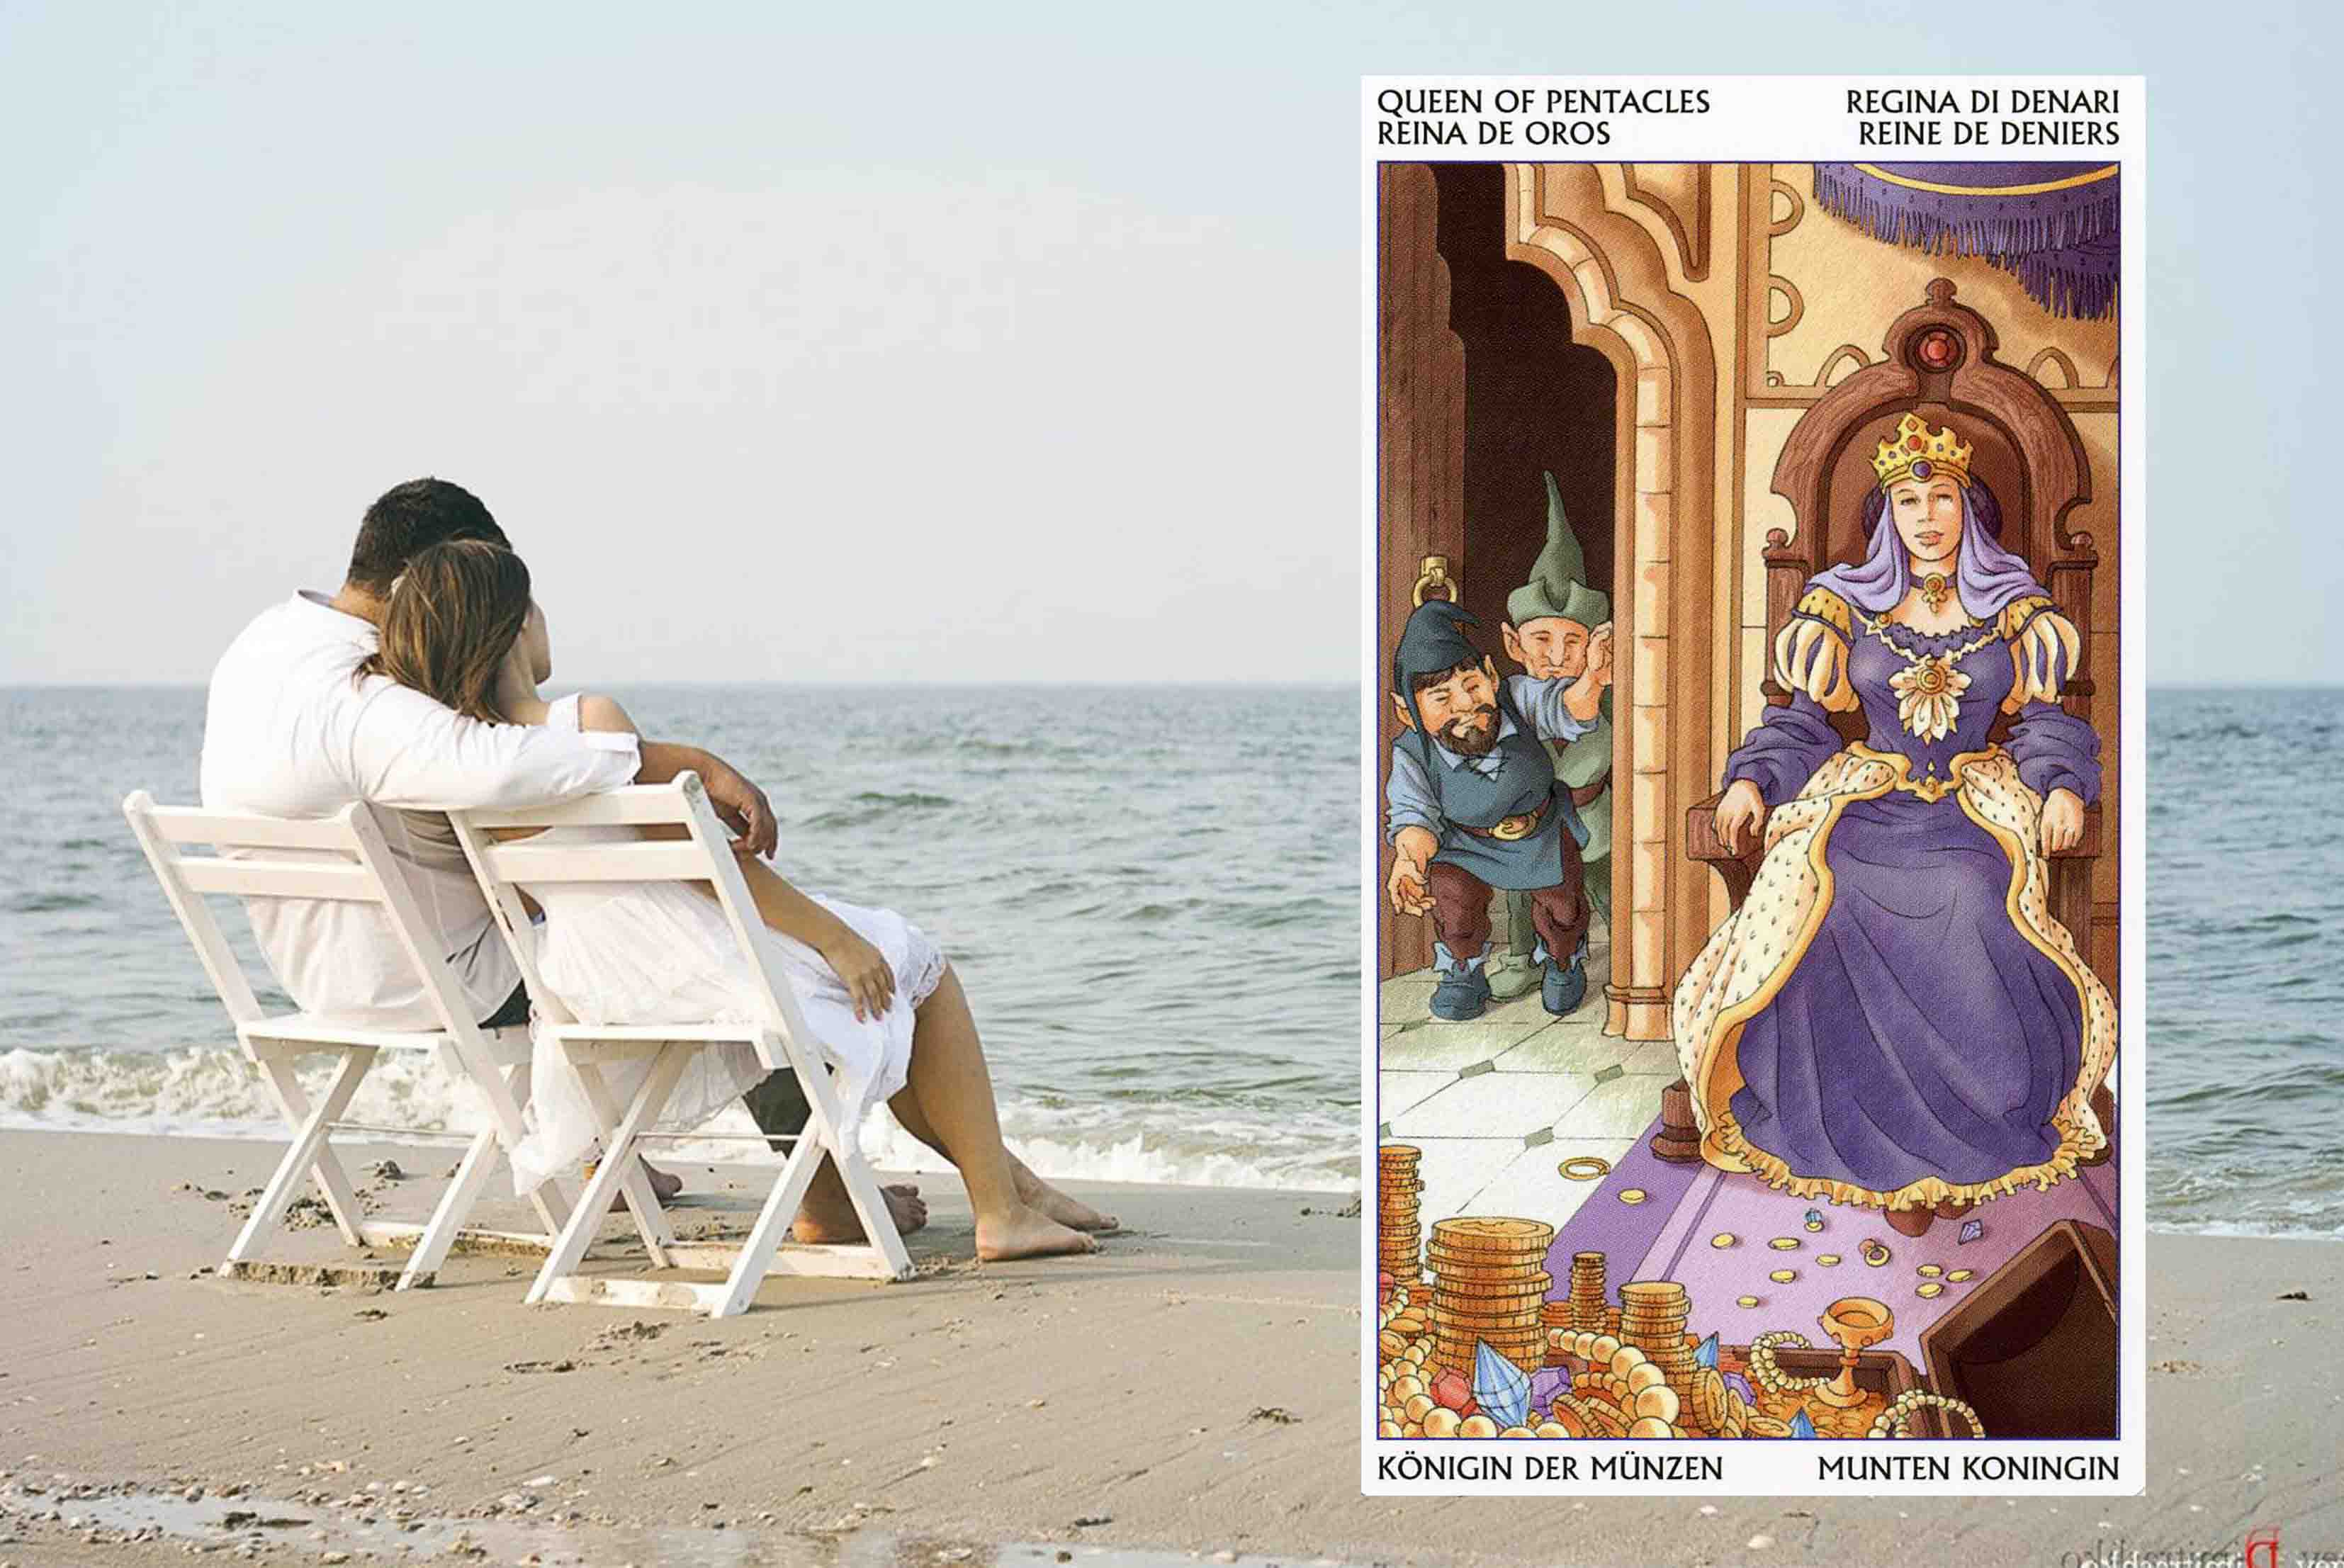 Королева Пентаклей Таро 78 Дверей: значение в отношениях, любви, деньгах и здоровье, и в сочетании с другими картами, карты дня